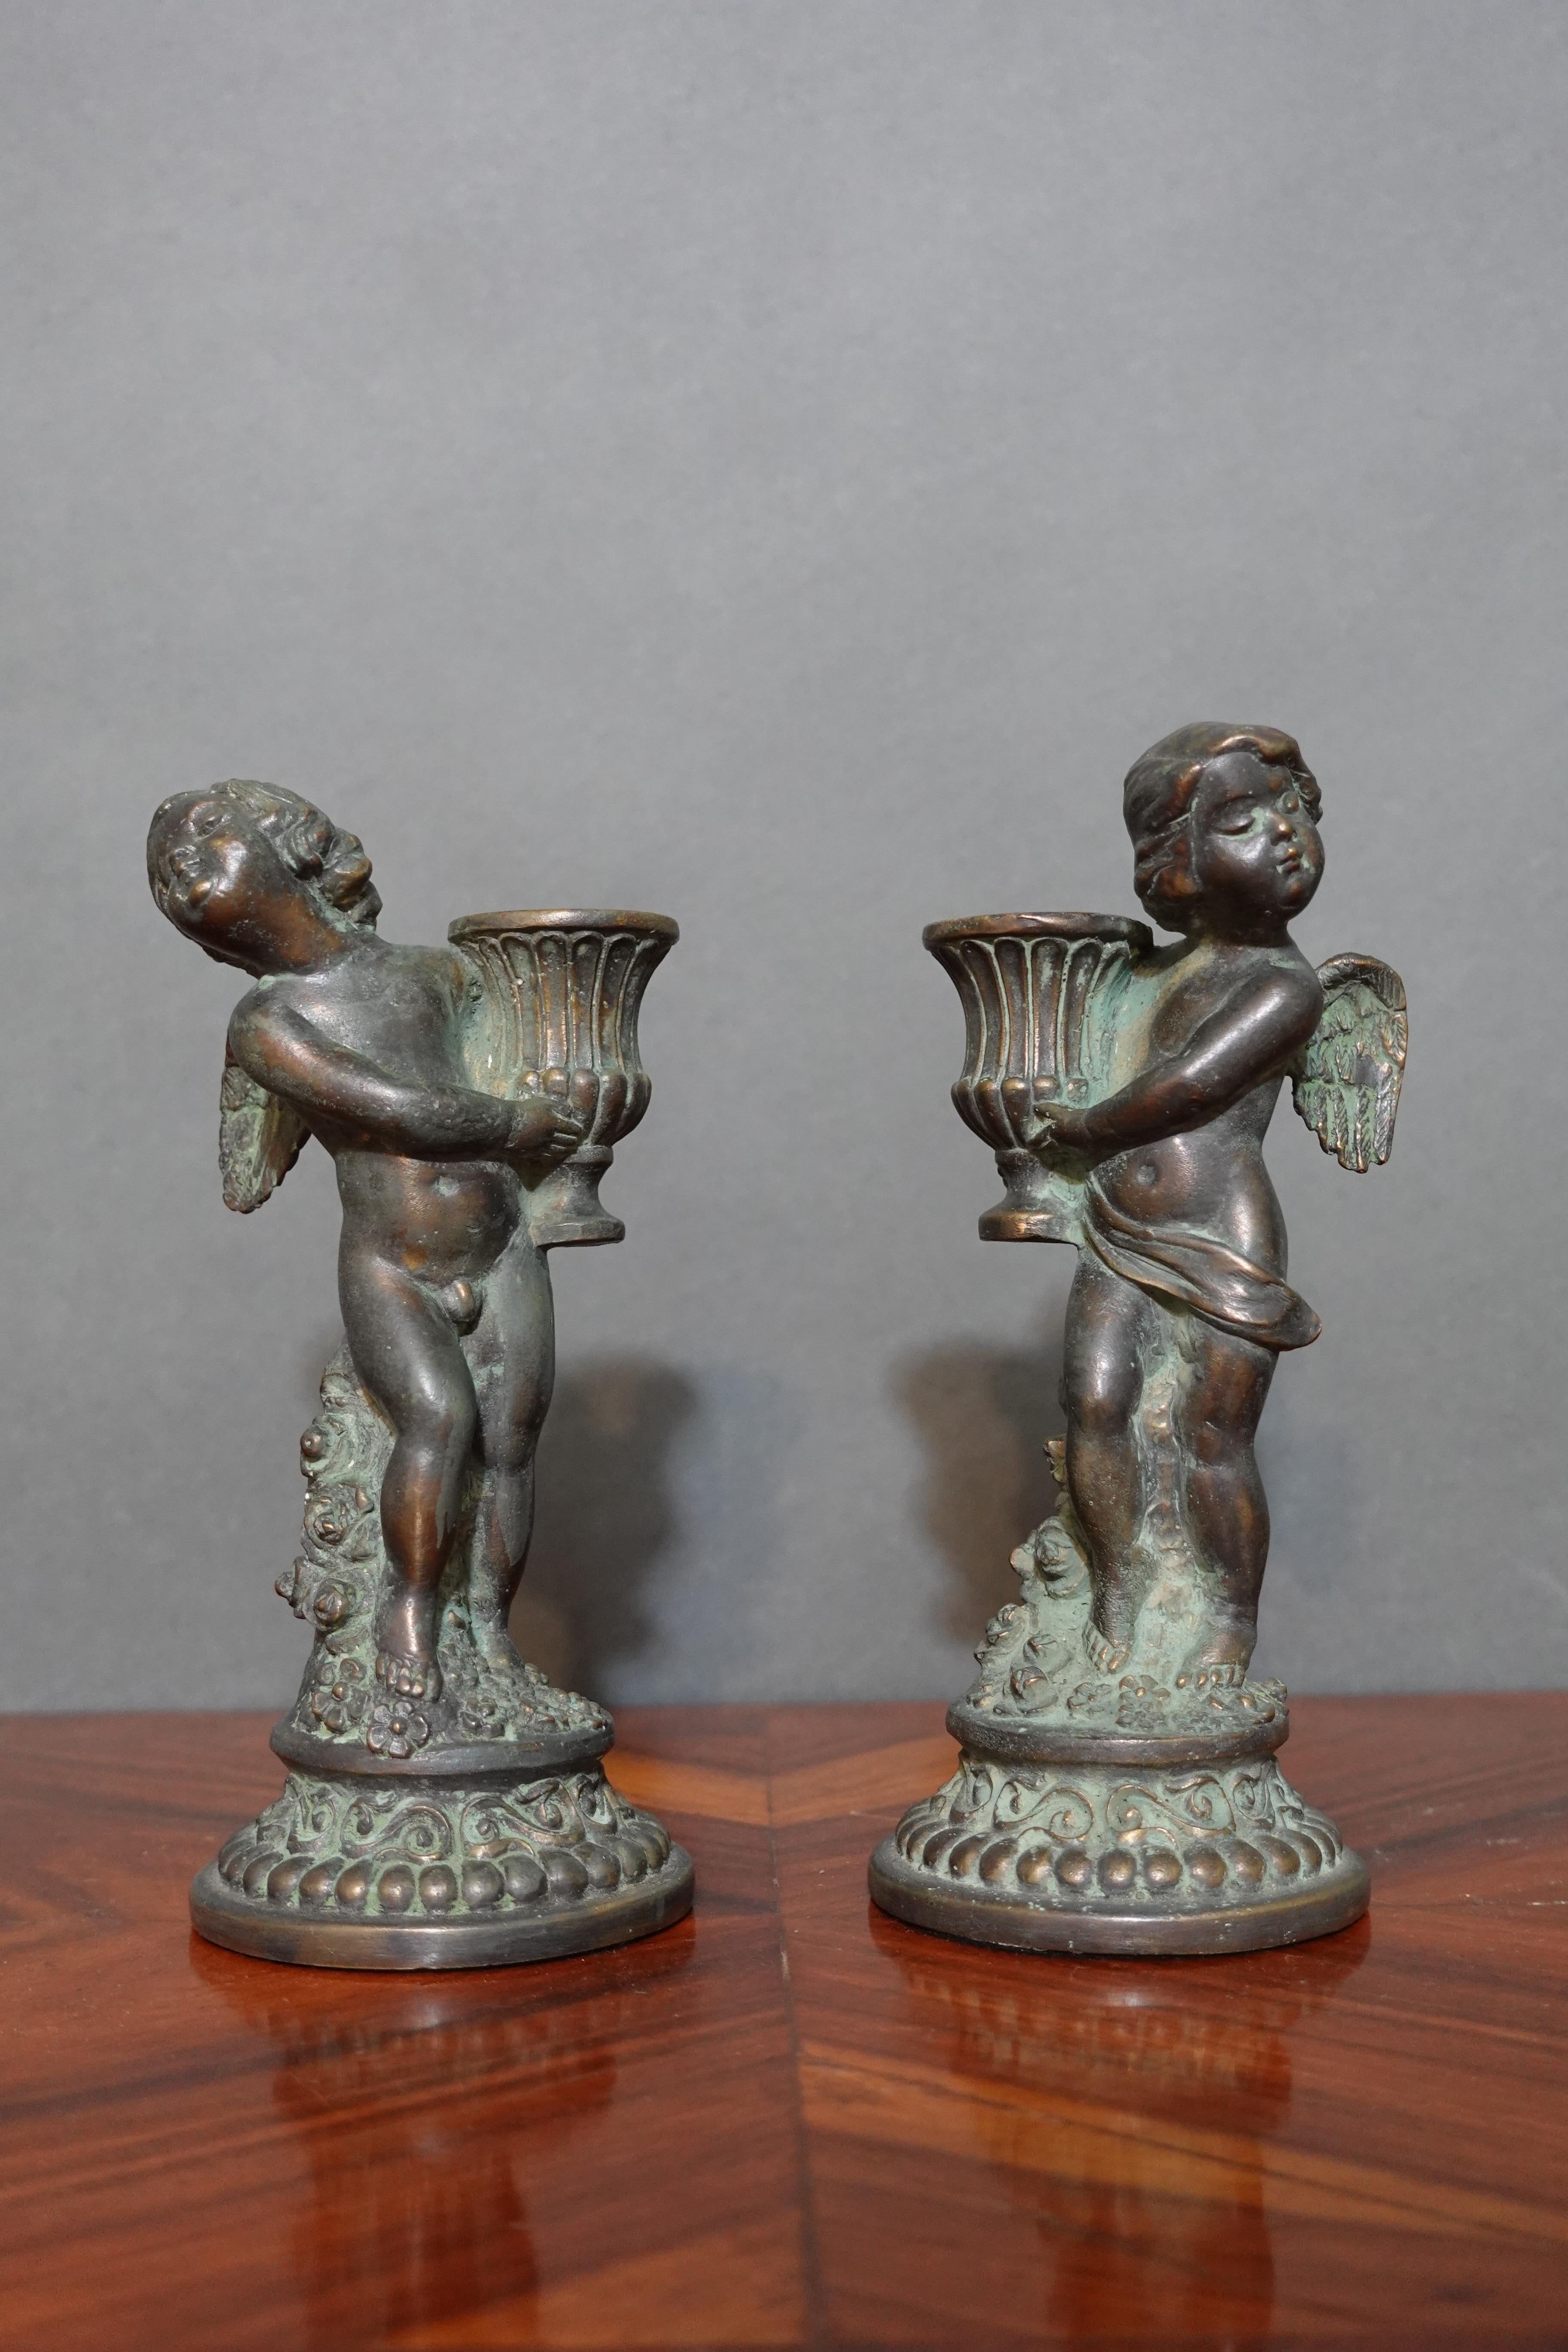 Une paire de chandeliers français de style Louis XV en bronze, modelés en chérubins avec des paniers.
Une paire d'œuvres d'art si adorables avec les formes d'angles du garçon et de la fille.

  